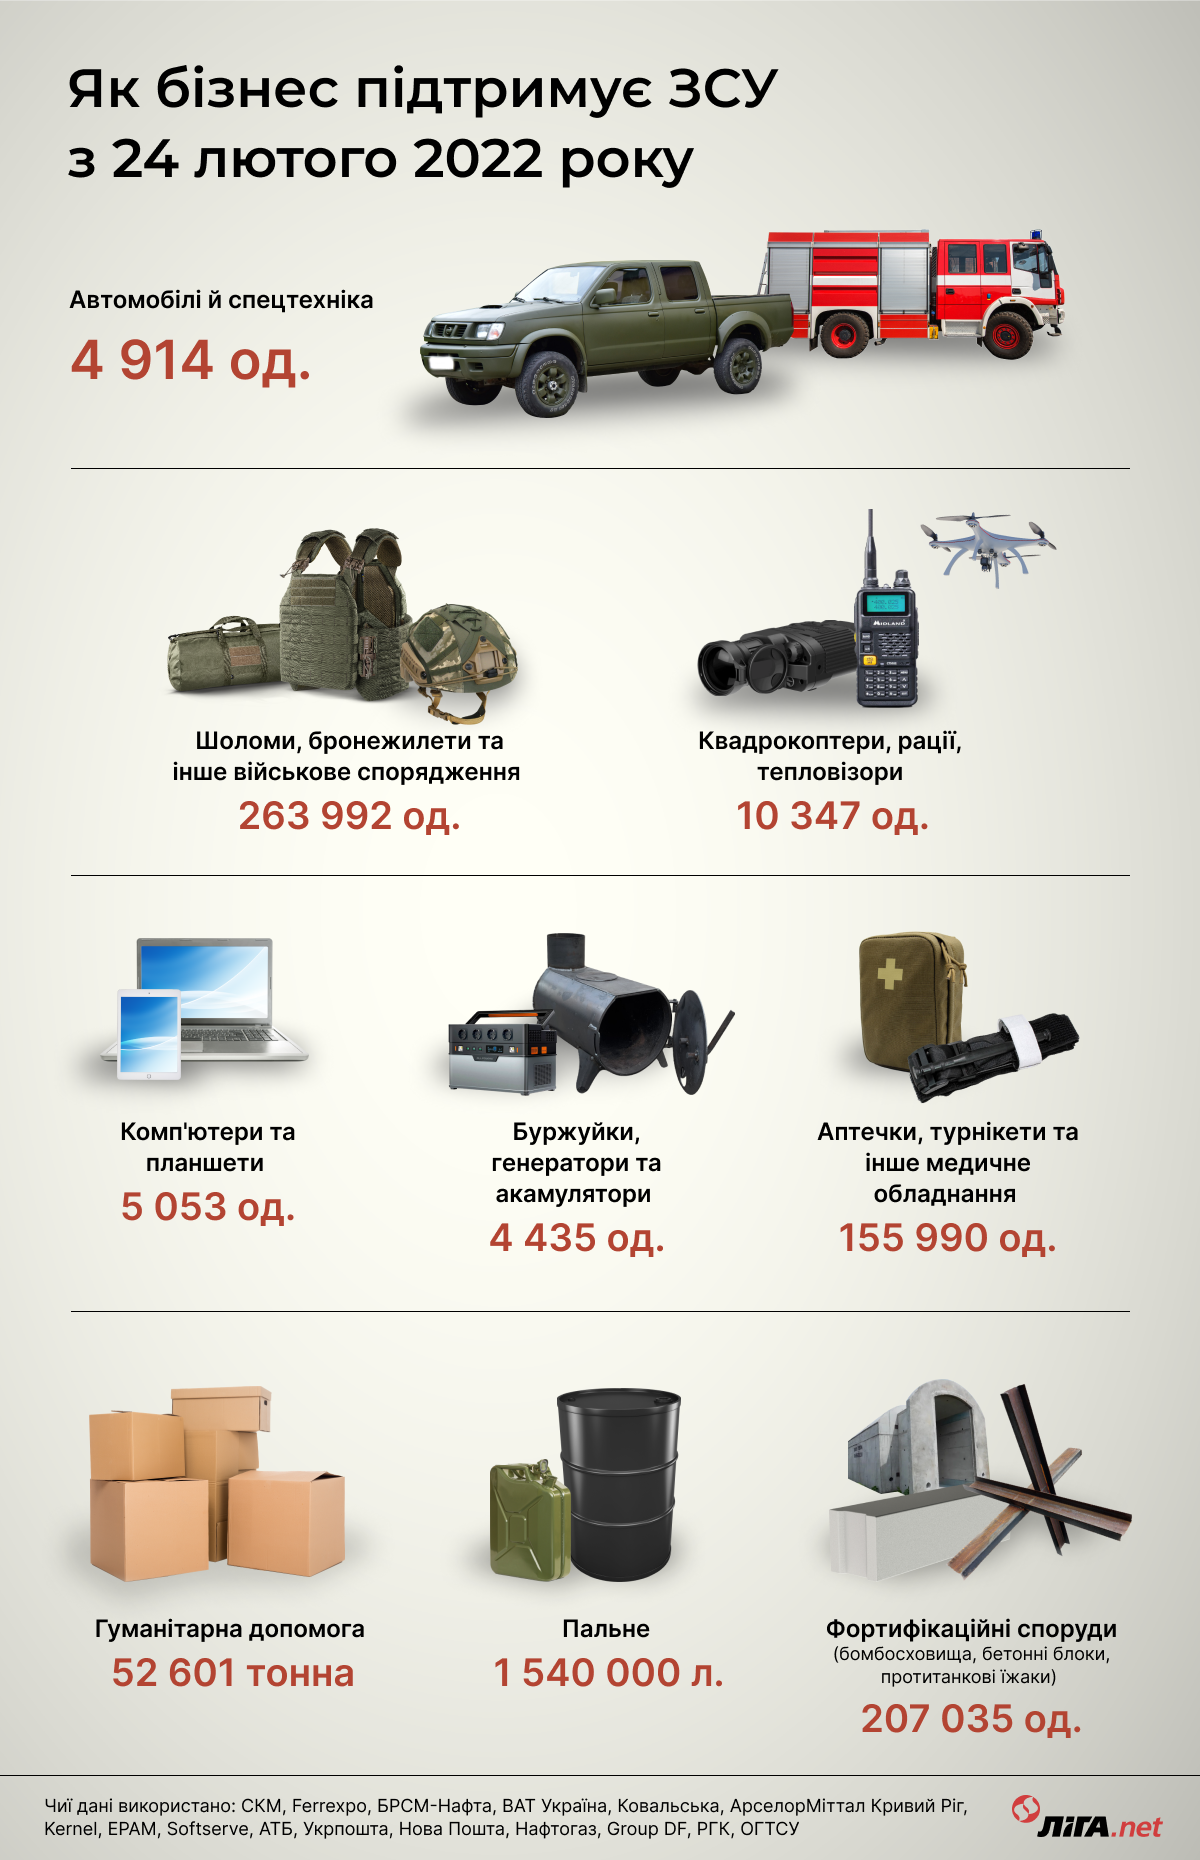 Бункеры от Ахметова, дроны от ПриватБанка. Как бизнес помогал ВСУ за год войны